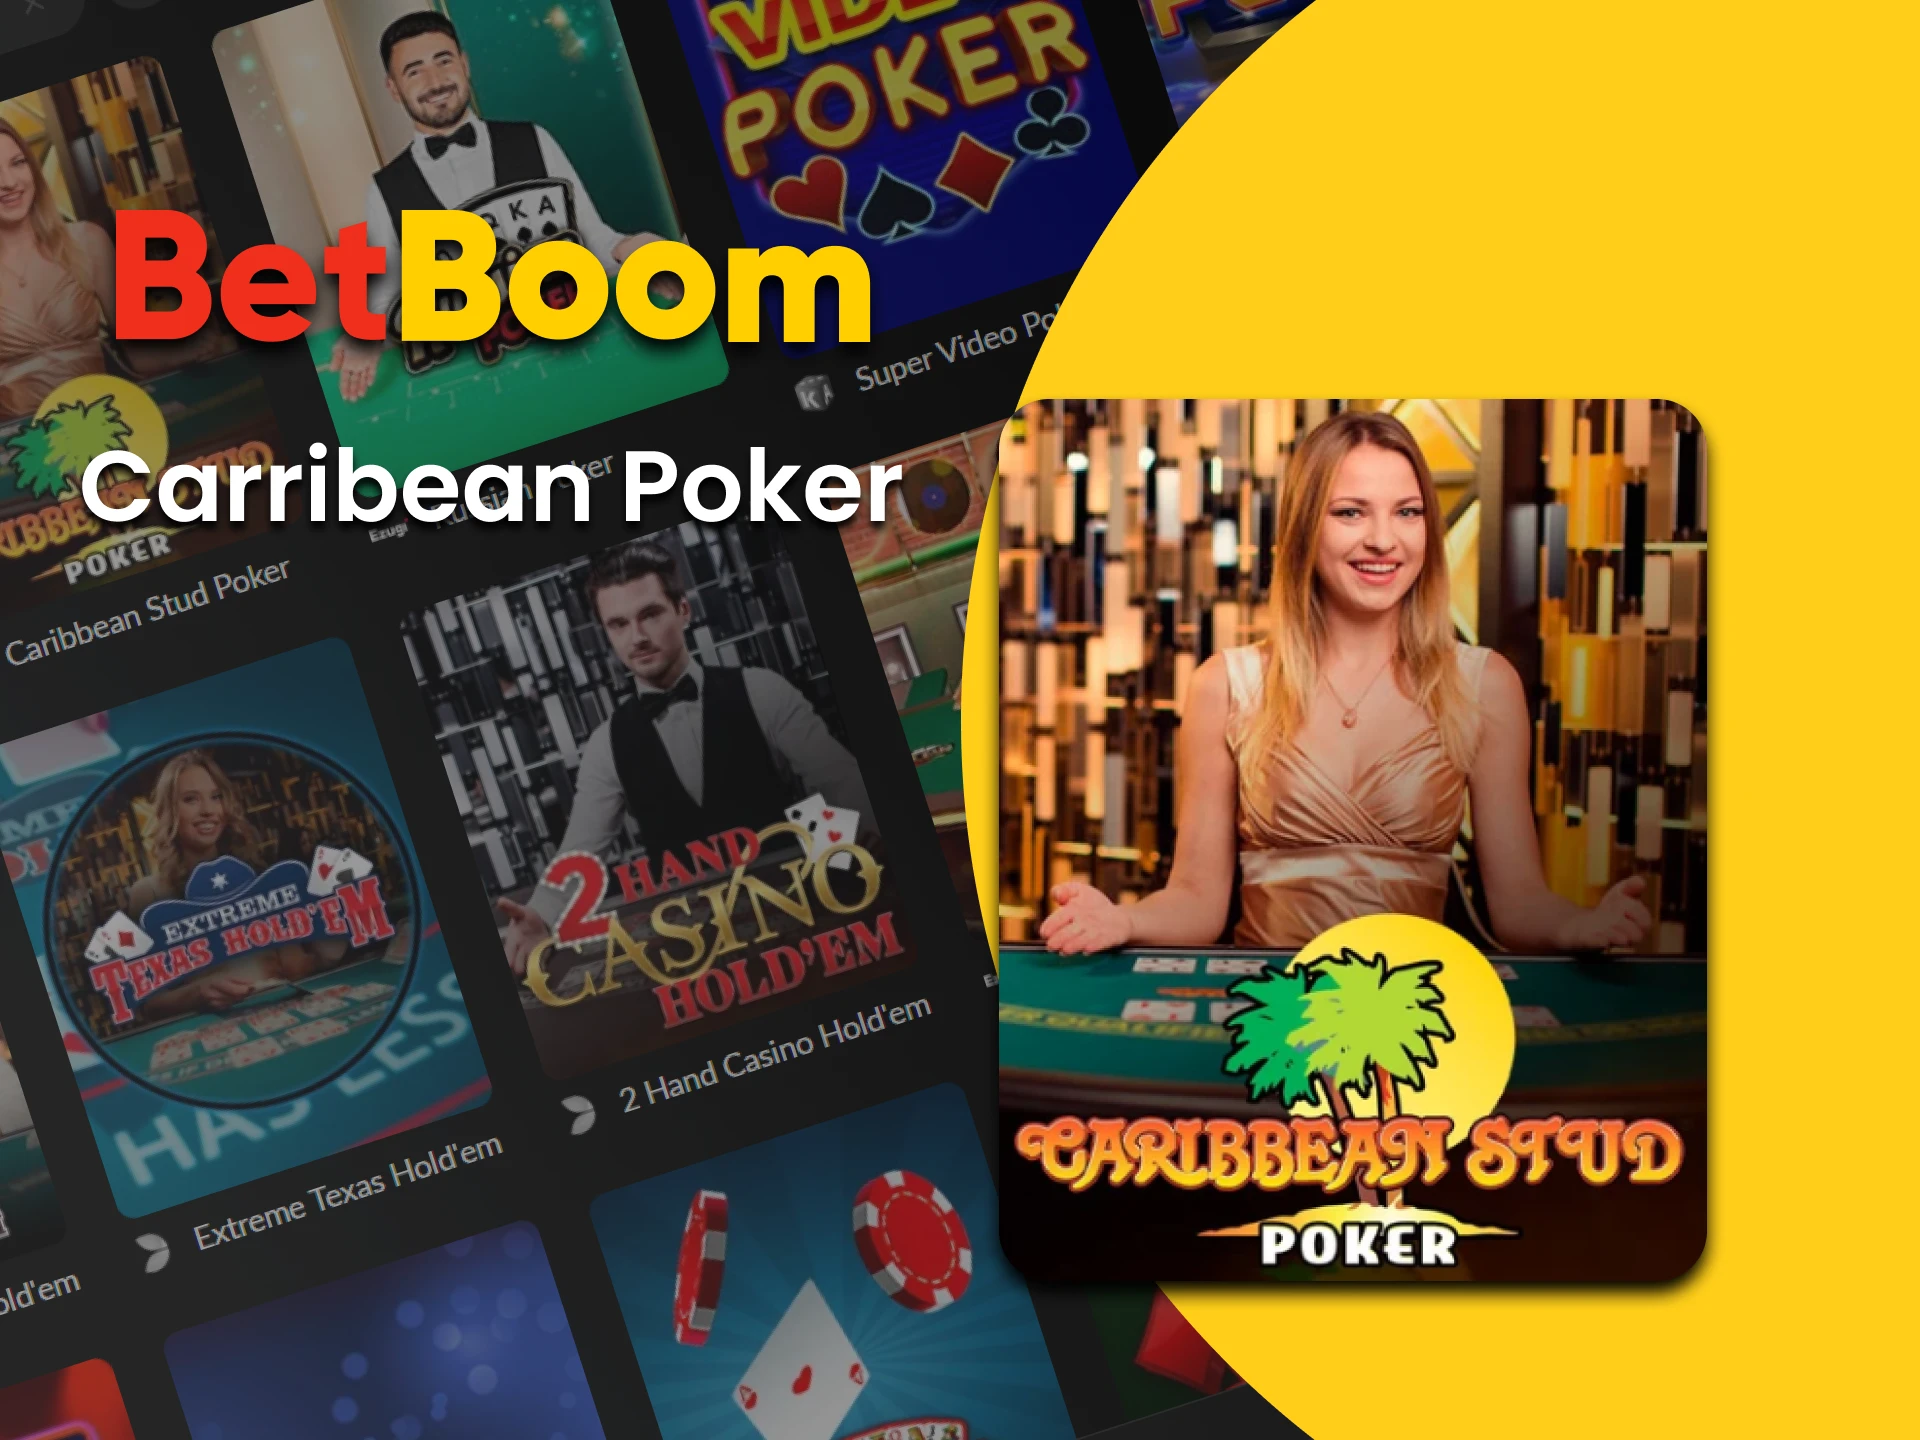 Jogue Carribean Poker no cassino do BetBoom.